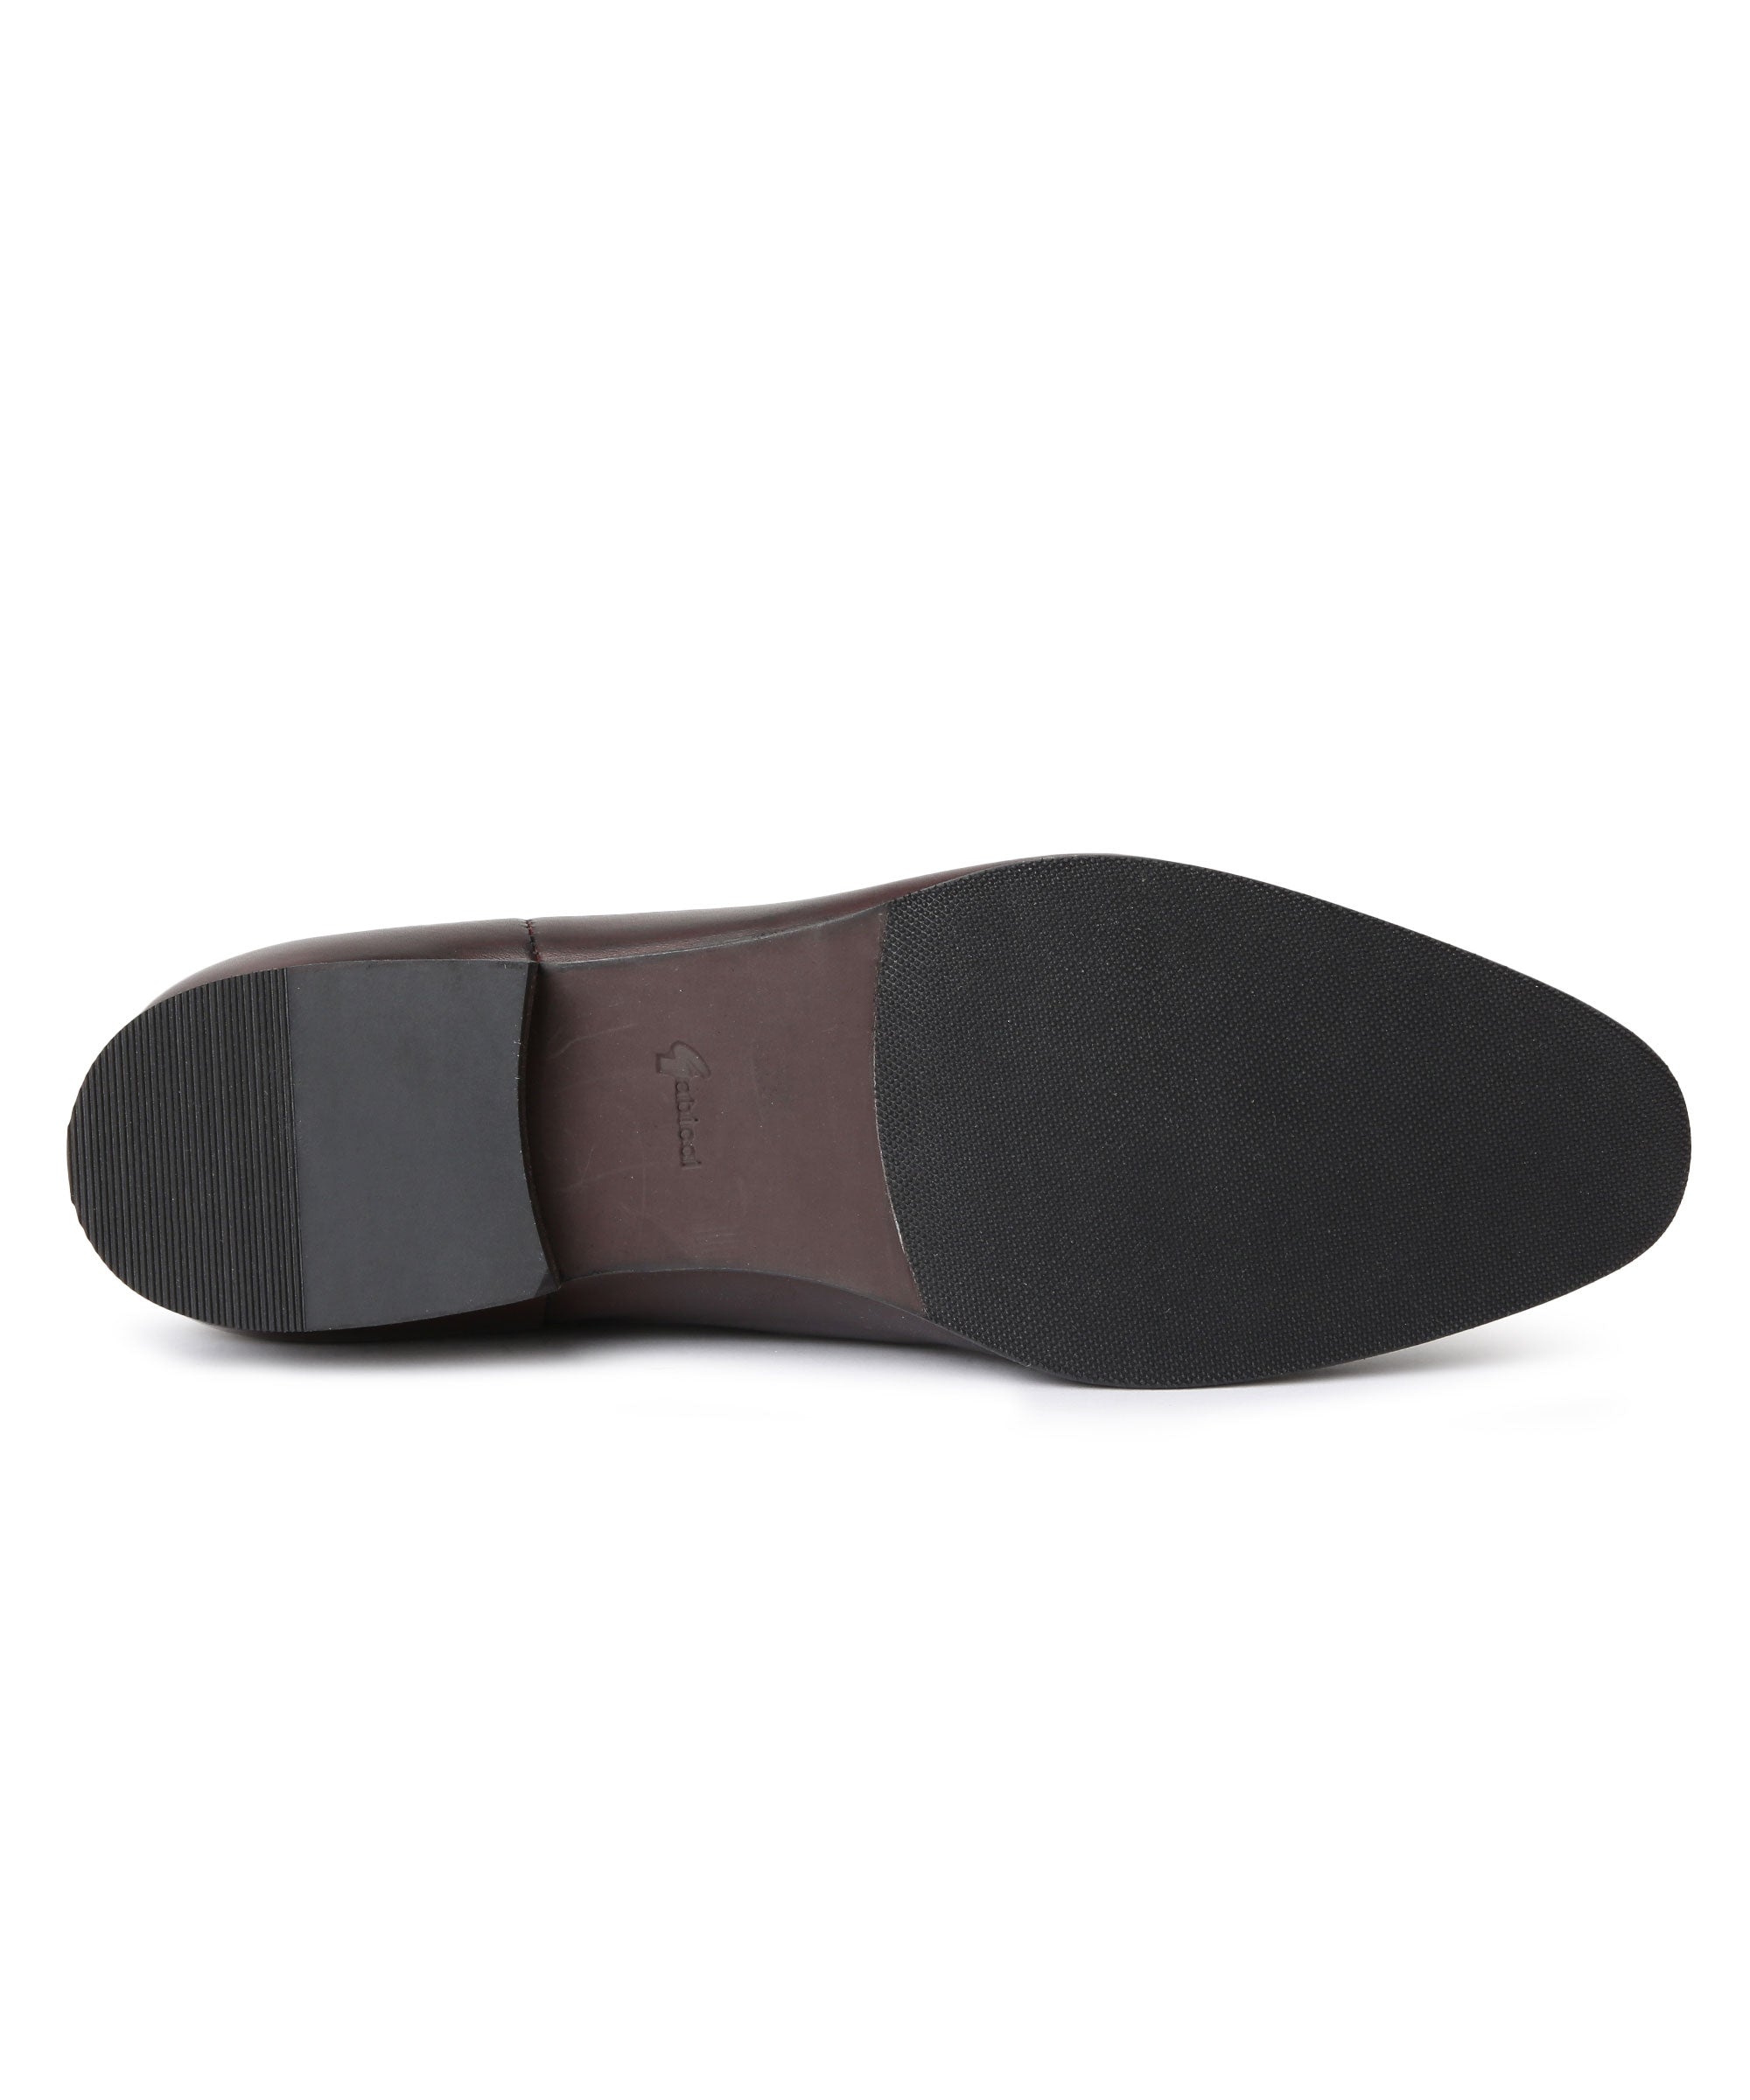 Gabicci - Royal oak color leather boot - FLEETWOOD CHELSEA (ROYAL OAK ...